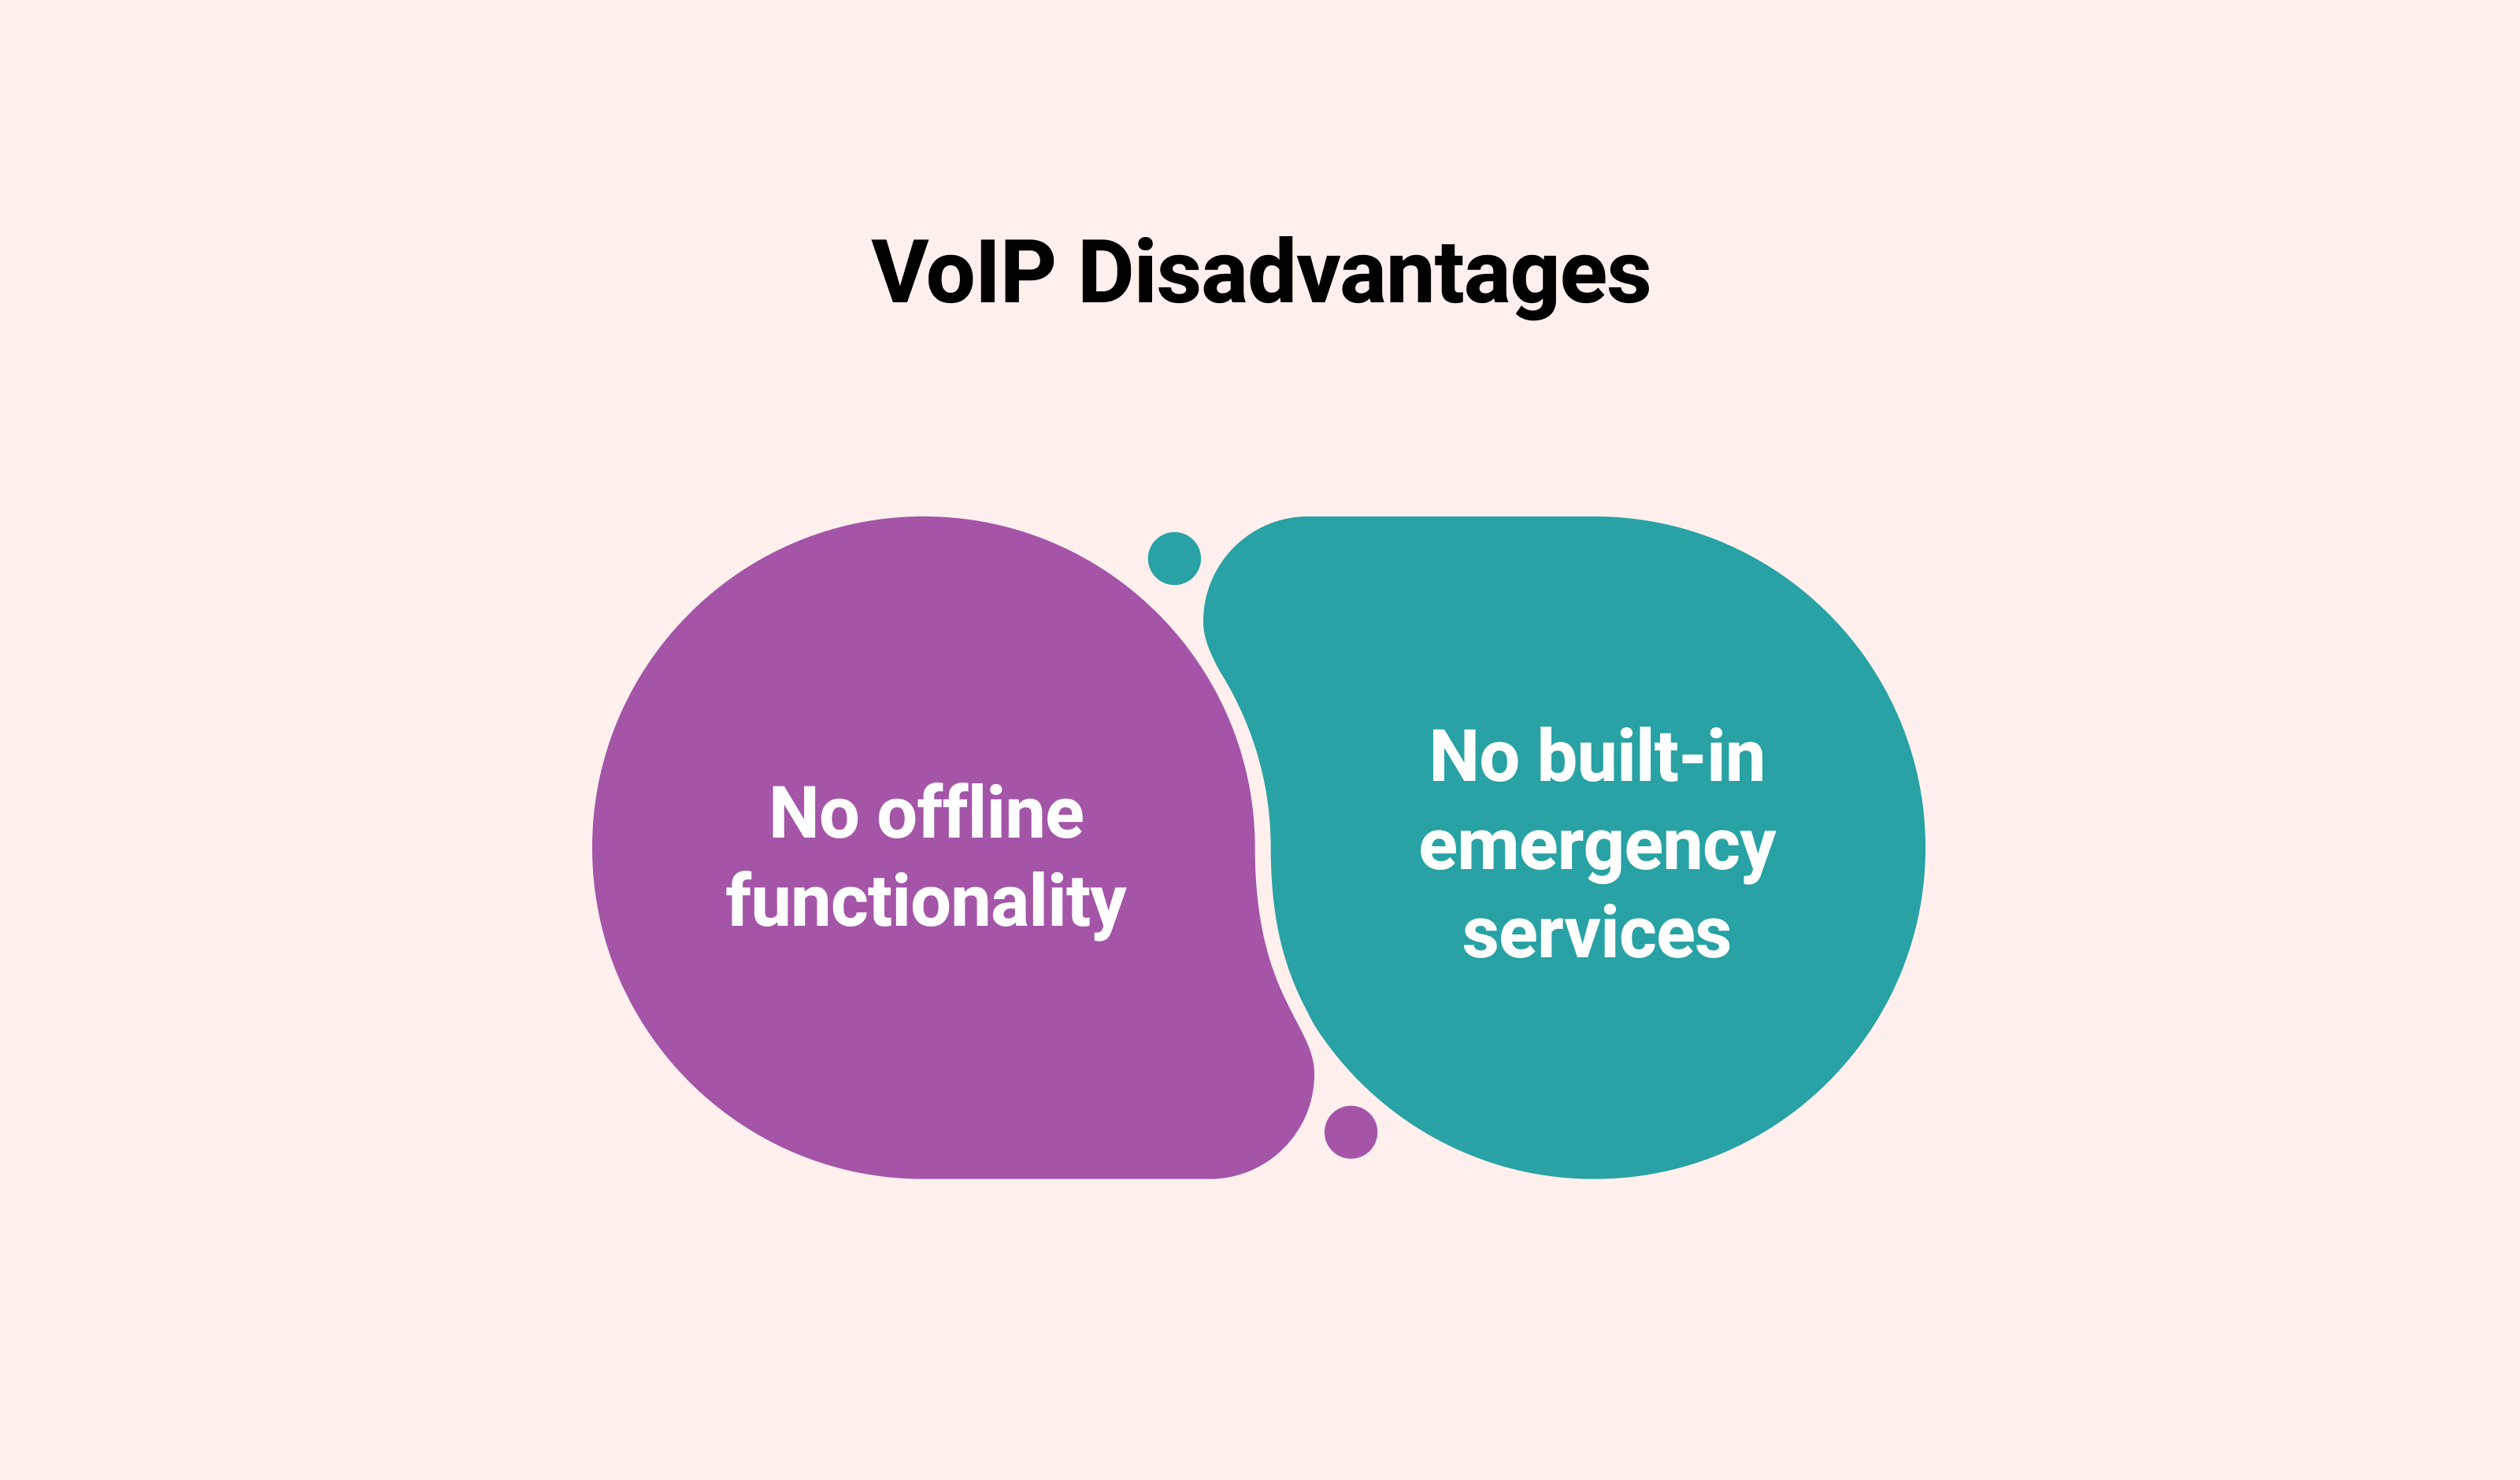 VoIP Disadvantages: